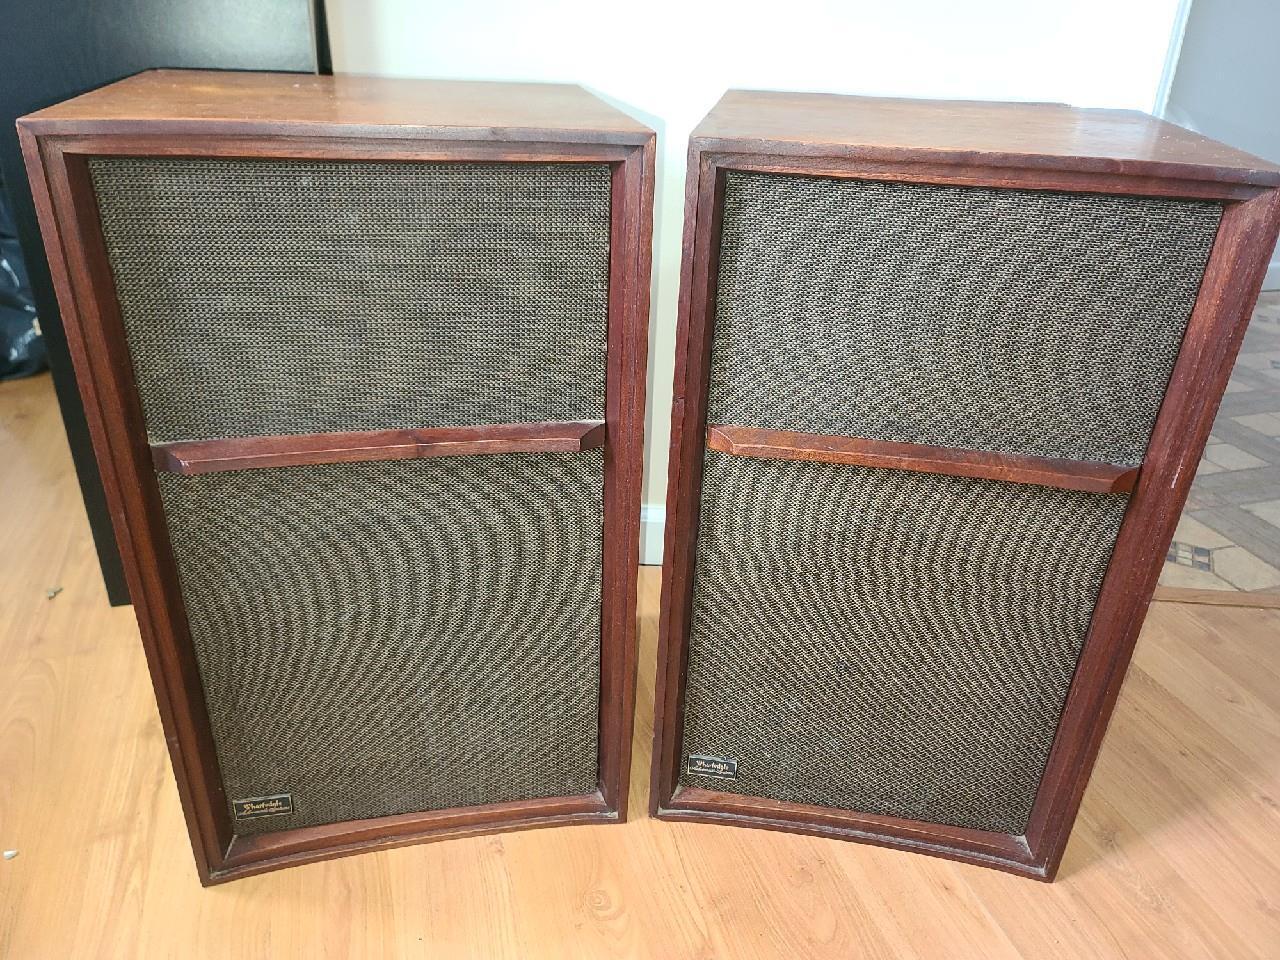 Pair of Vintage Wharfedale W60D Mark II Speakers - As Is, Read Details